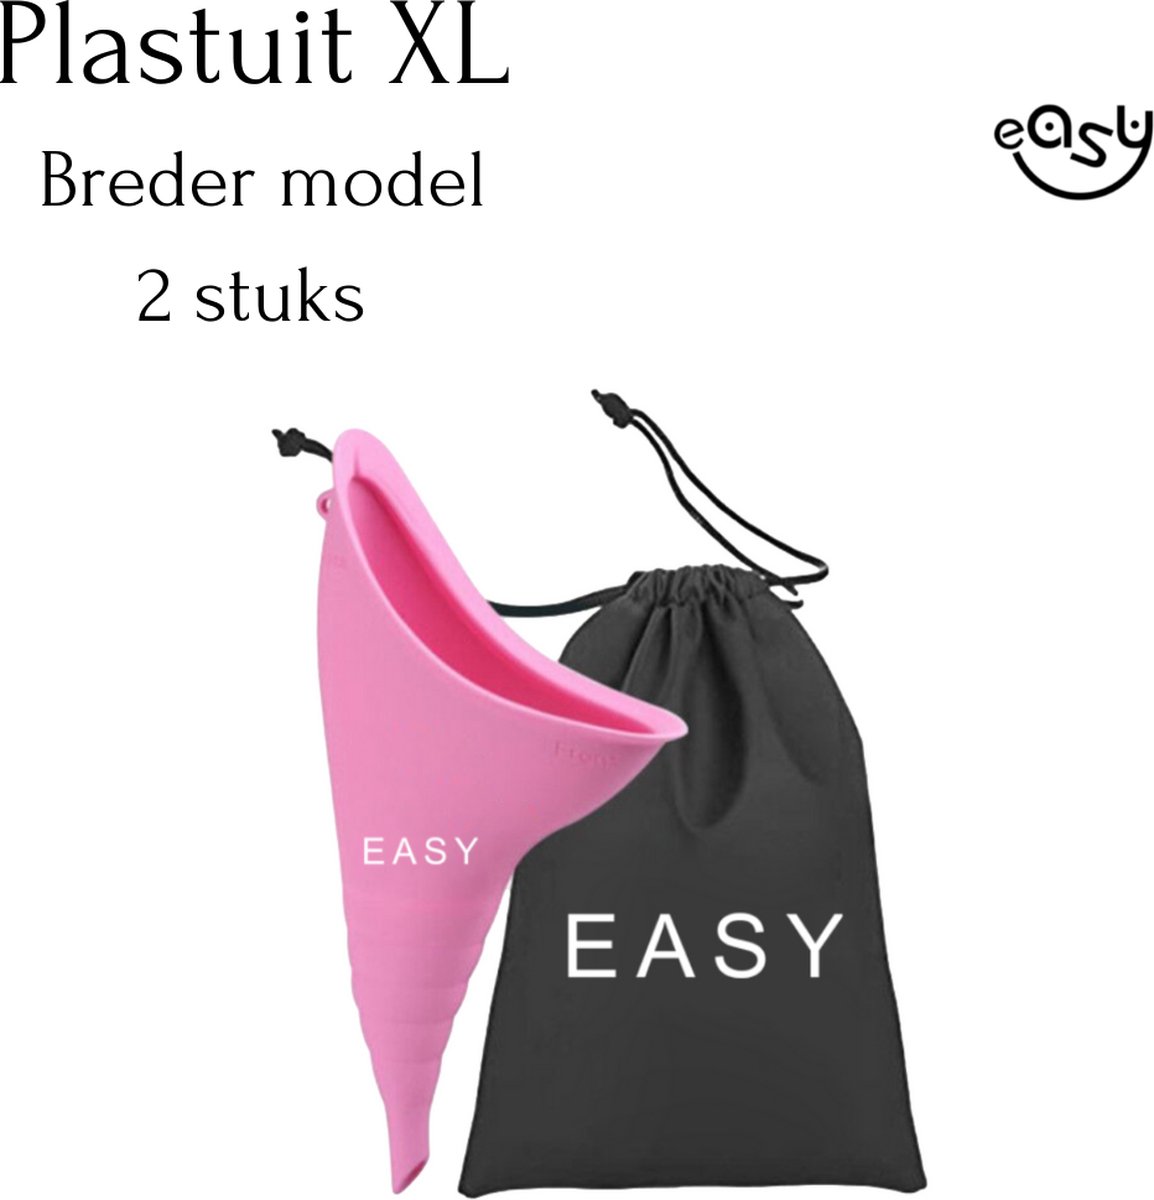 Plastuit - 2 - Urinaal - Flexibel siliconen - Groter model - Plaskoker - easy